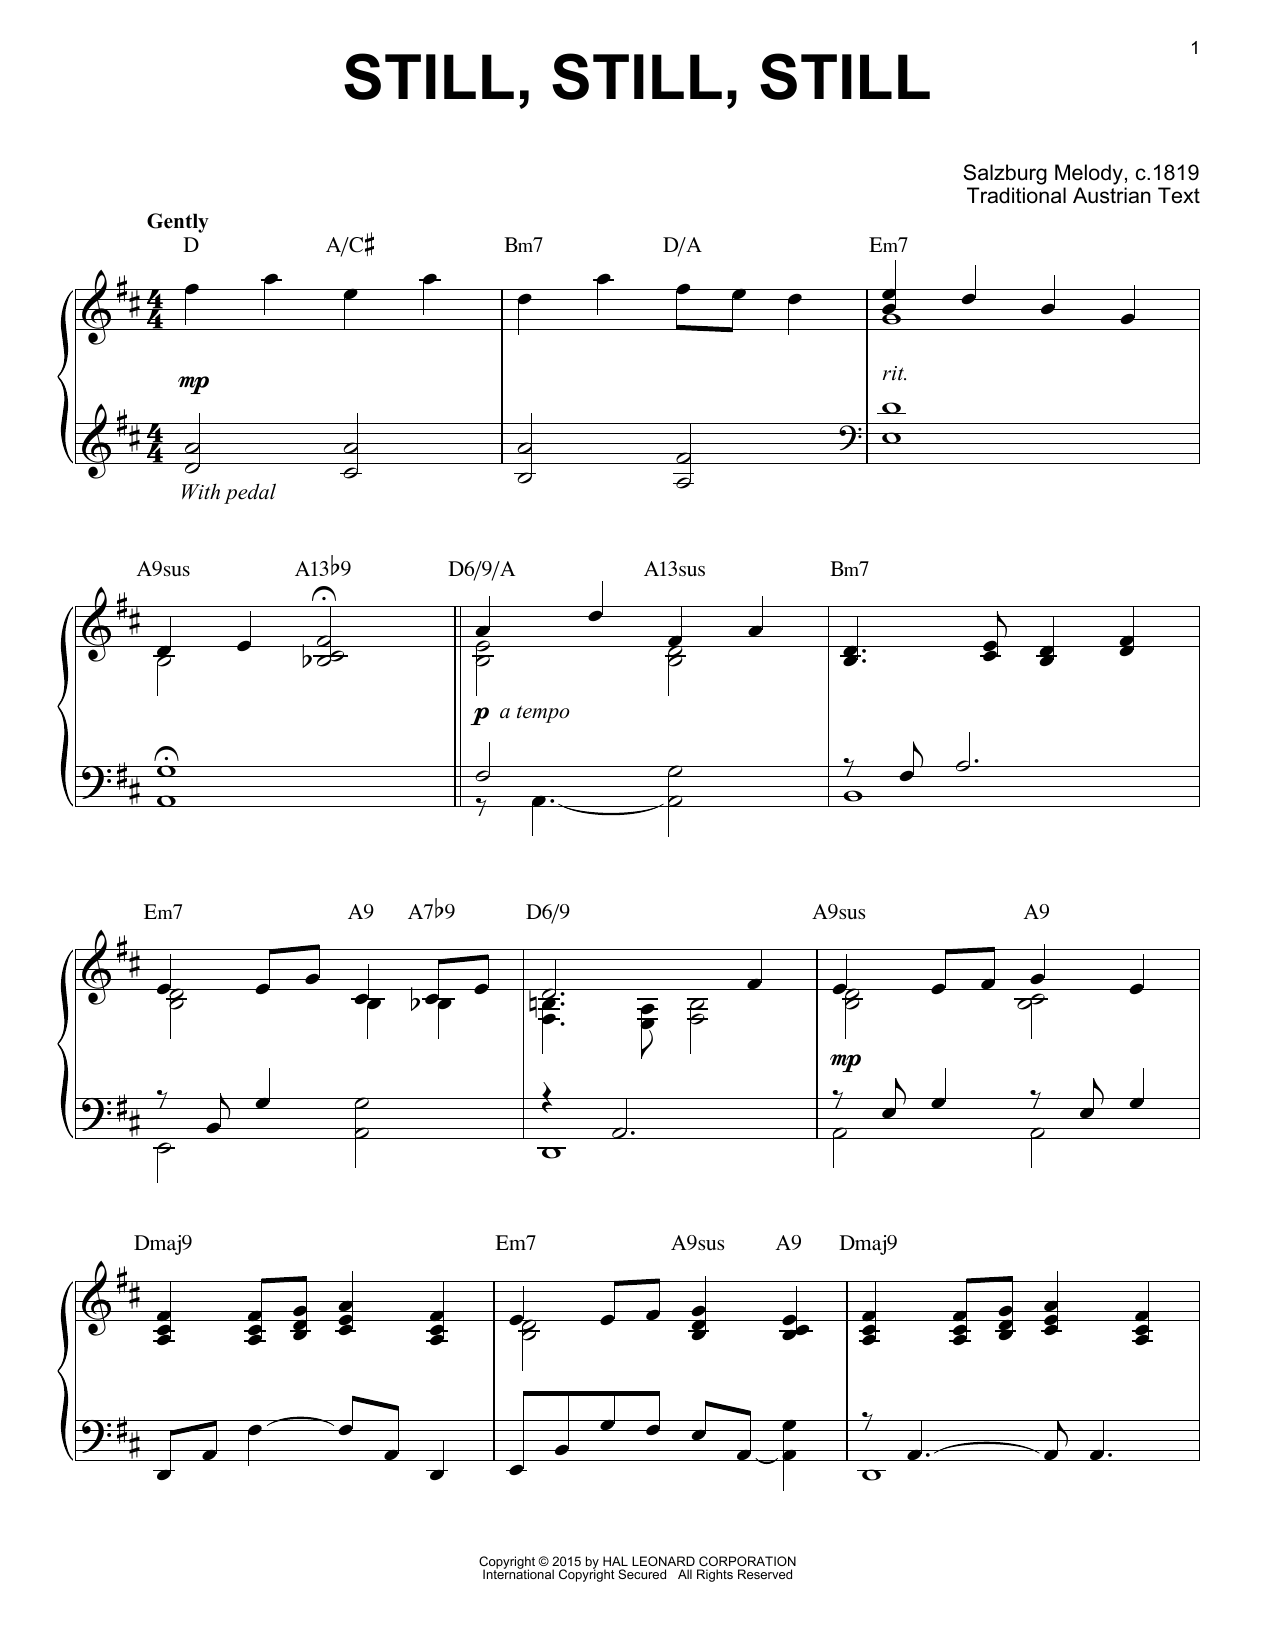 Download Salzburg Melody c.1819 Still, Still, Still [Jazz version] (arr Sheet Music